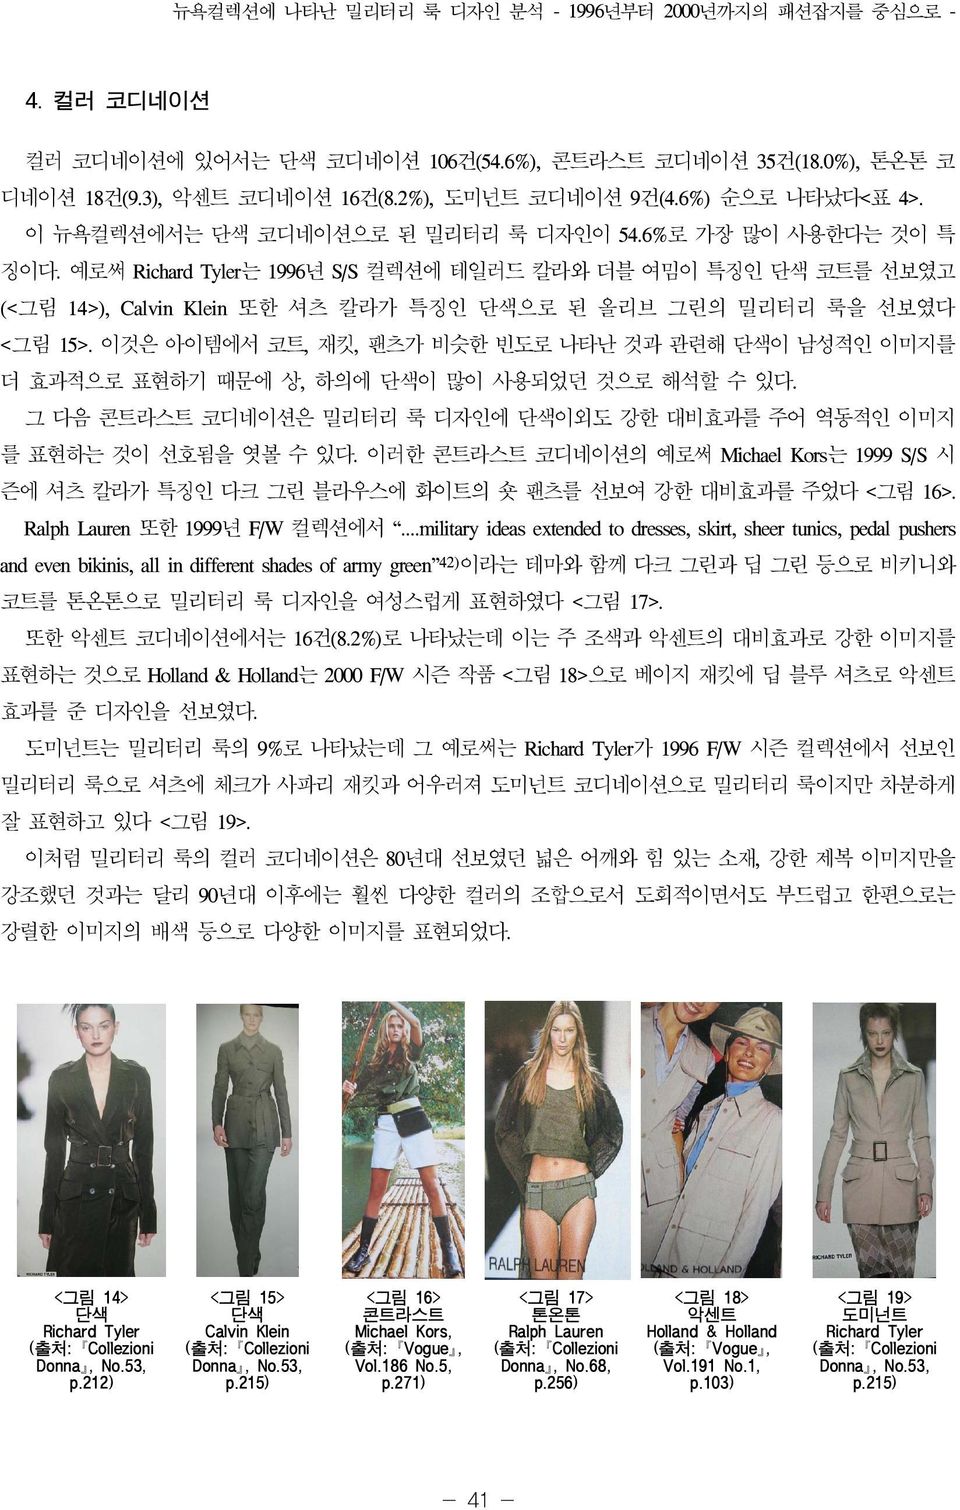 예로써 Richard Tyler는 1996년 S/S 컬렉션에 테일러드 칼라와 더블 여밈이 특징인 단색 코트를 선보였고 (<그림 14>), Calvin Klein 또한 셔츠 칼라가 특징인 단색으로 된 올리브 그린의 밀리터리 룩을 선보였다 <그림 15>.